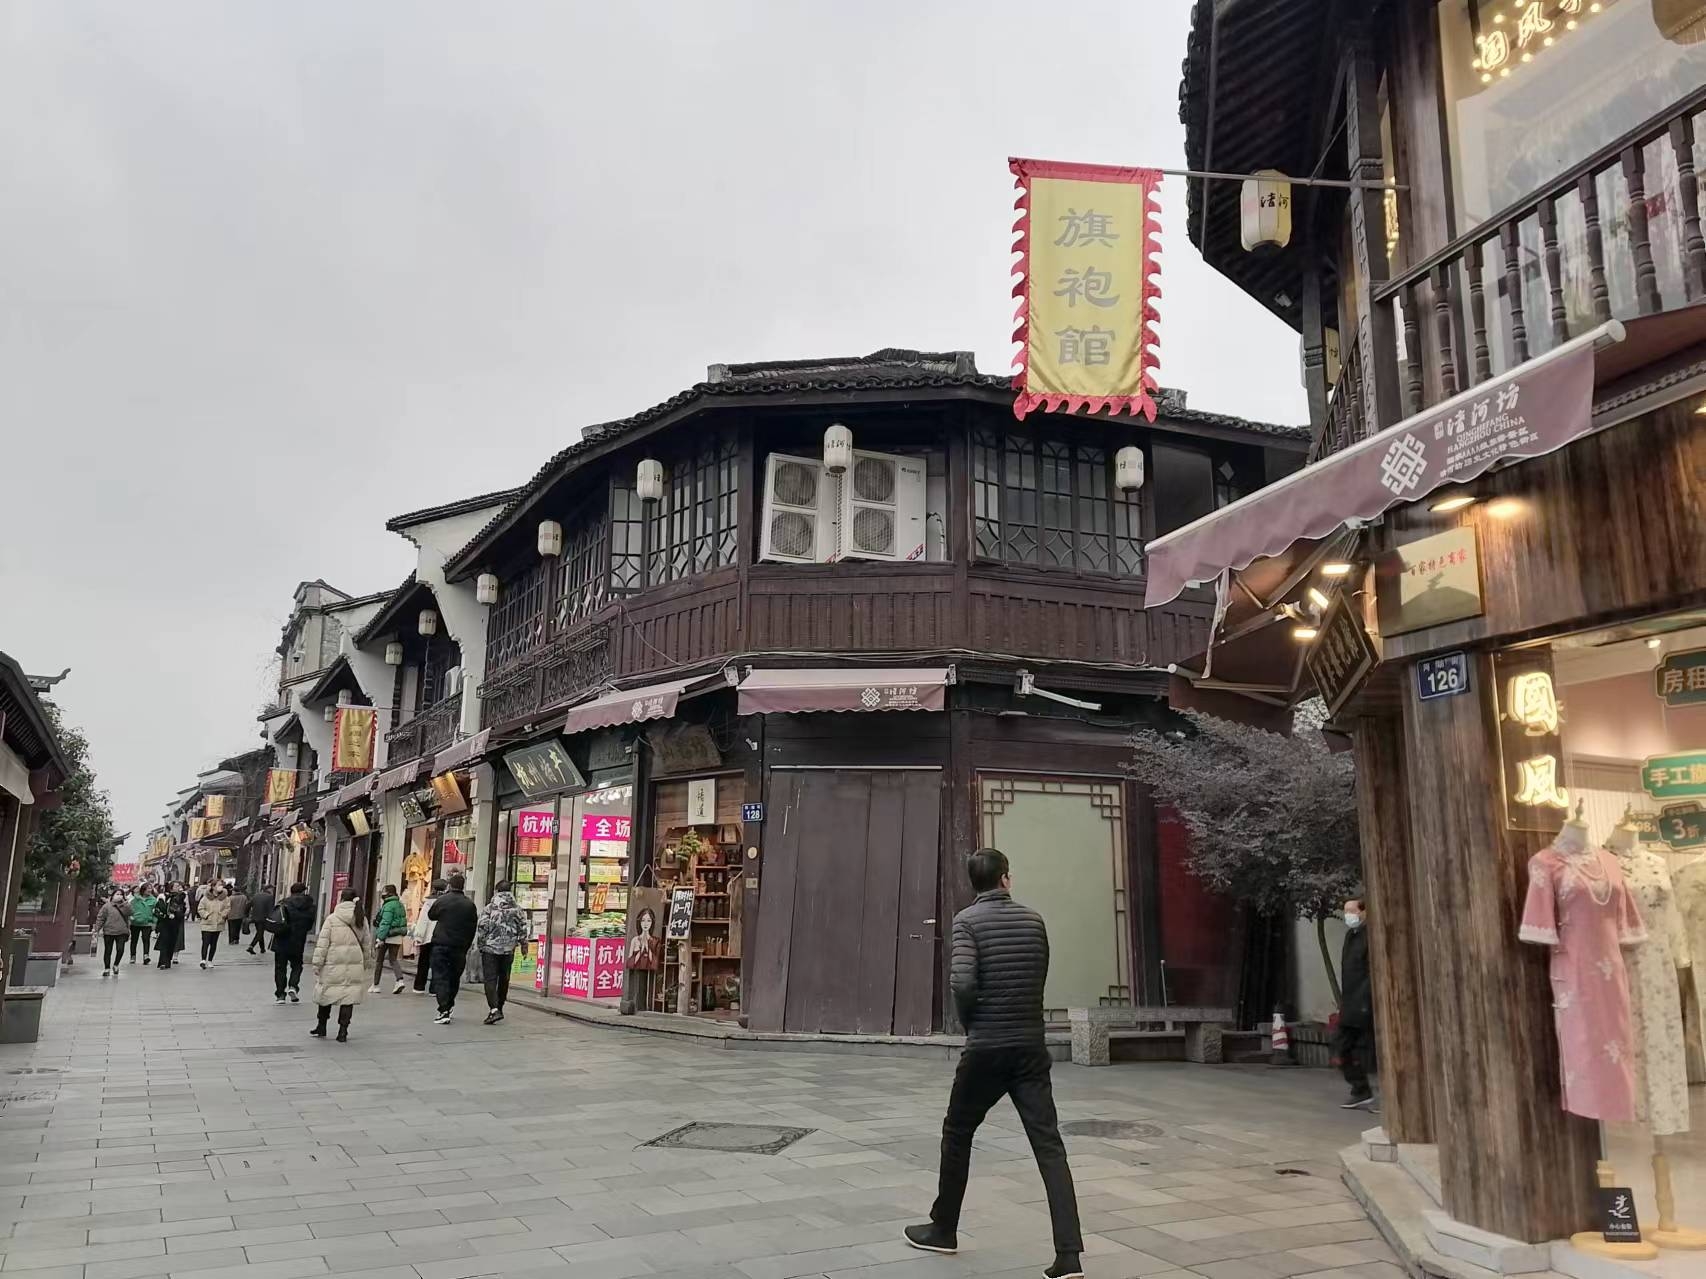 #老街上的老字号店铺 #城市人文手记 清河坊街区位于紧邻杭州西子湖，有地铁直达，交通便利，这里保留有